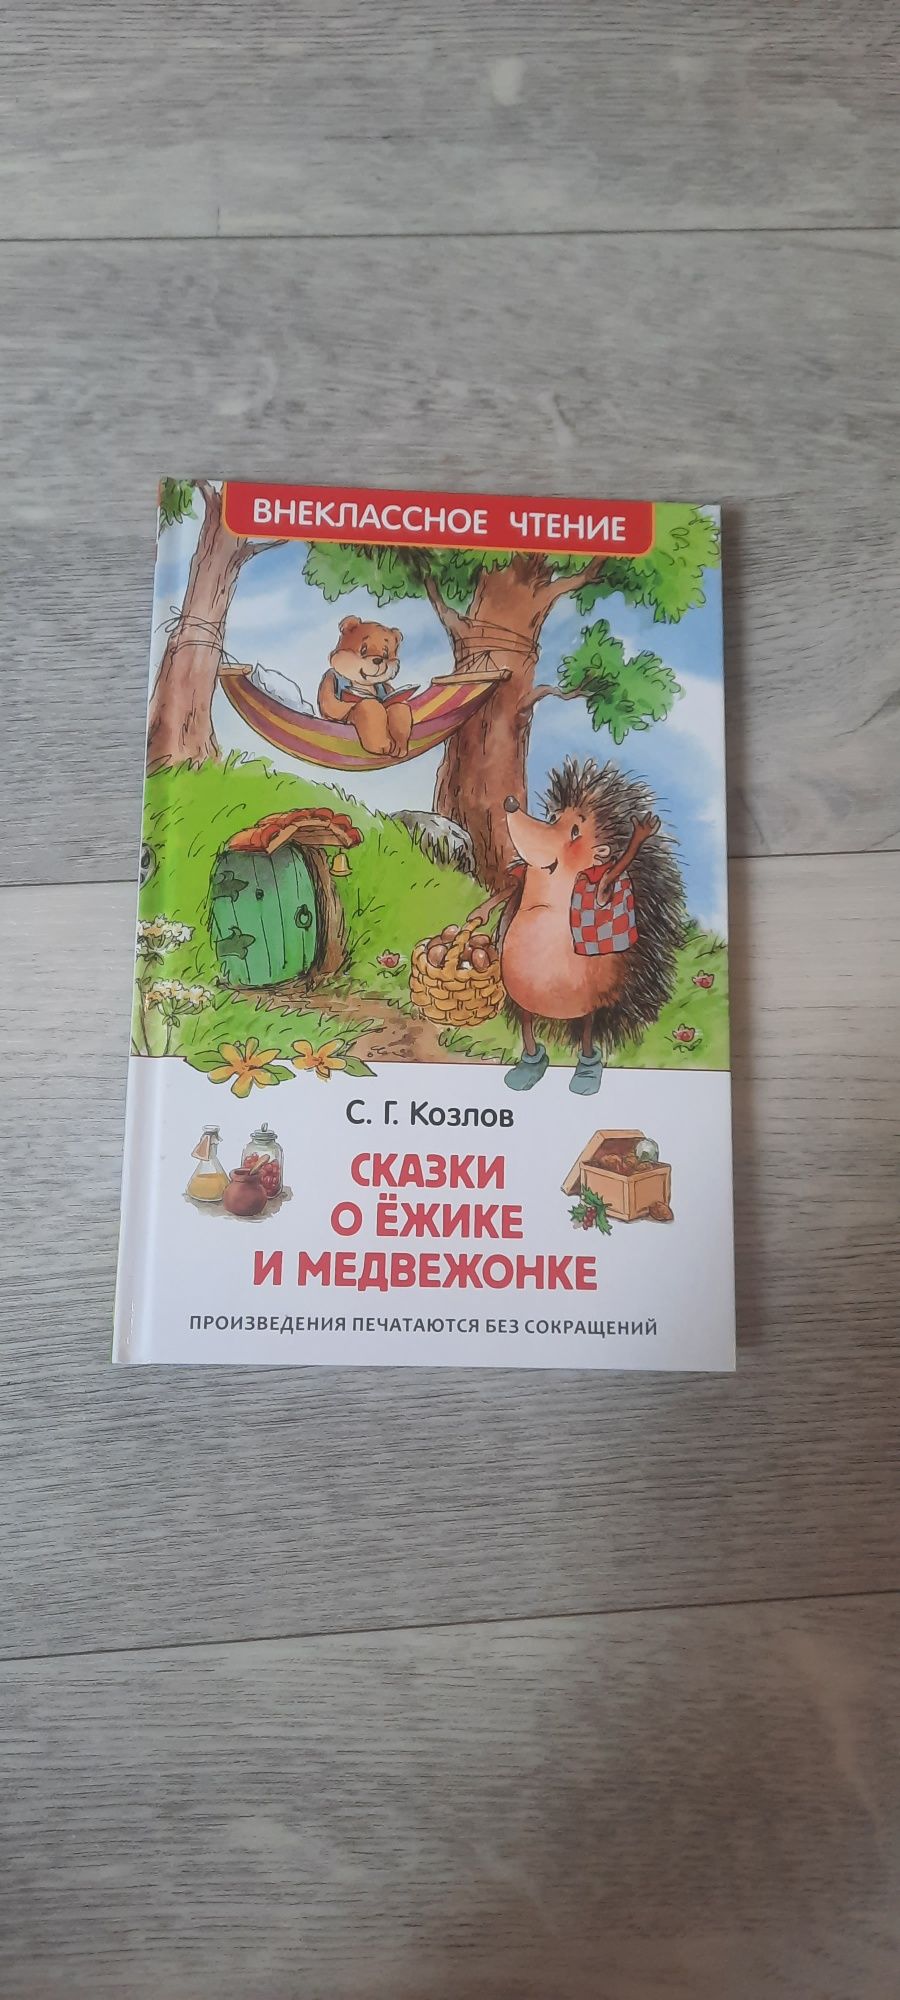 Детские книги в идеальном состоянии